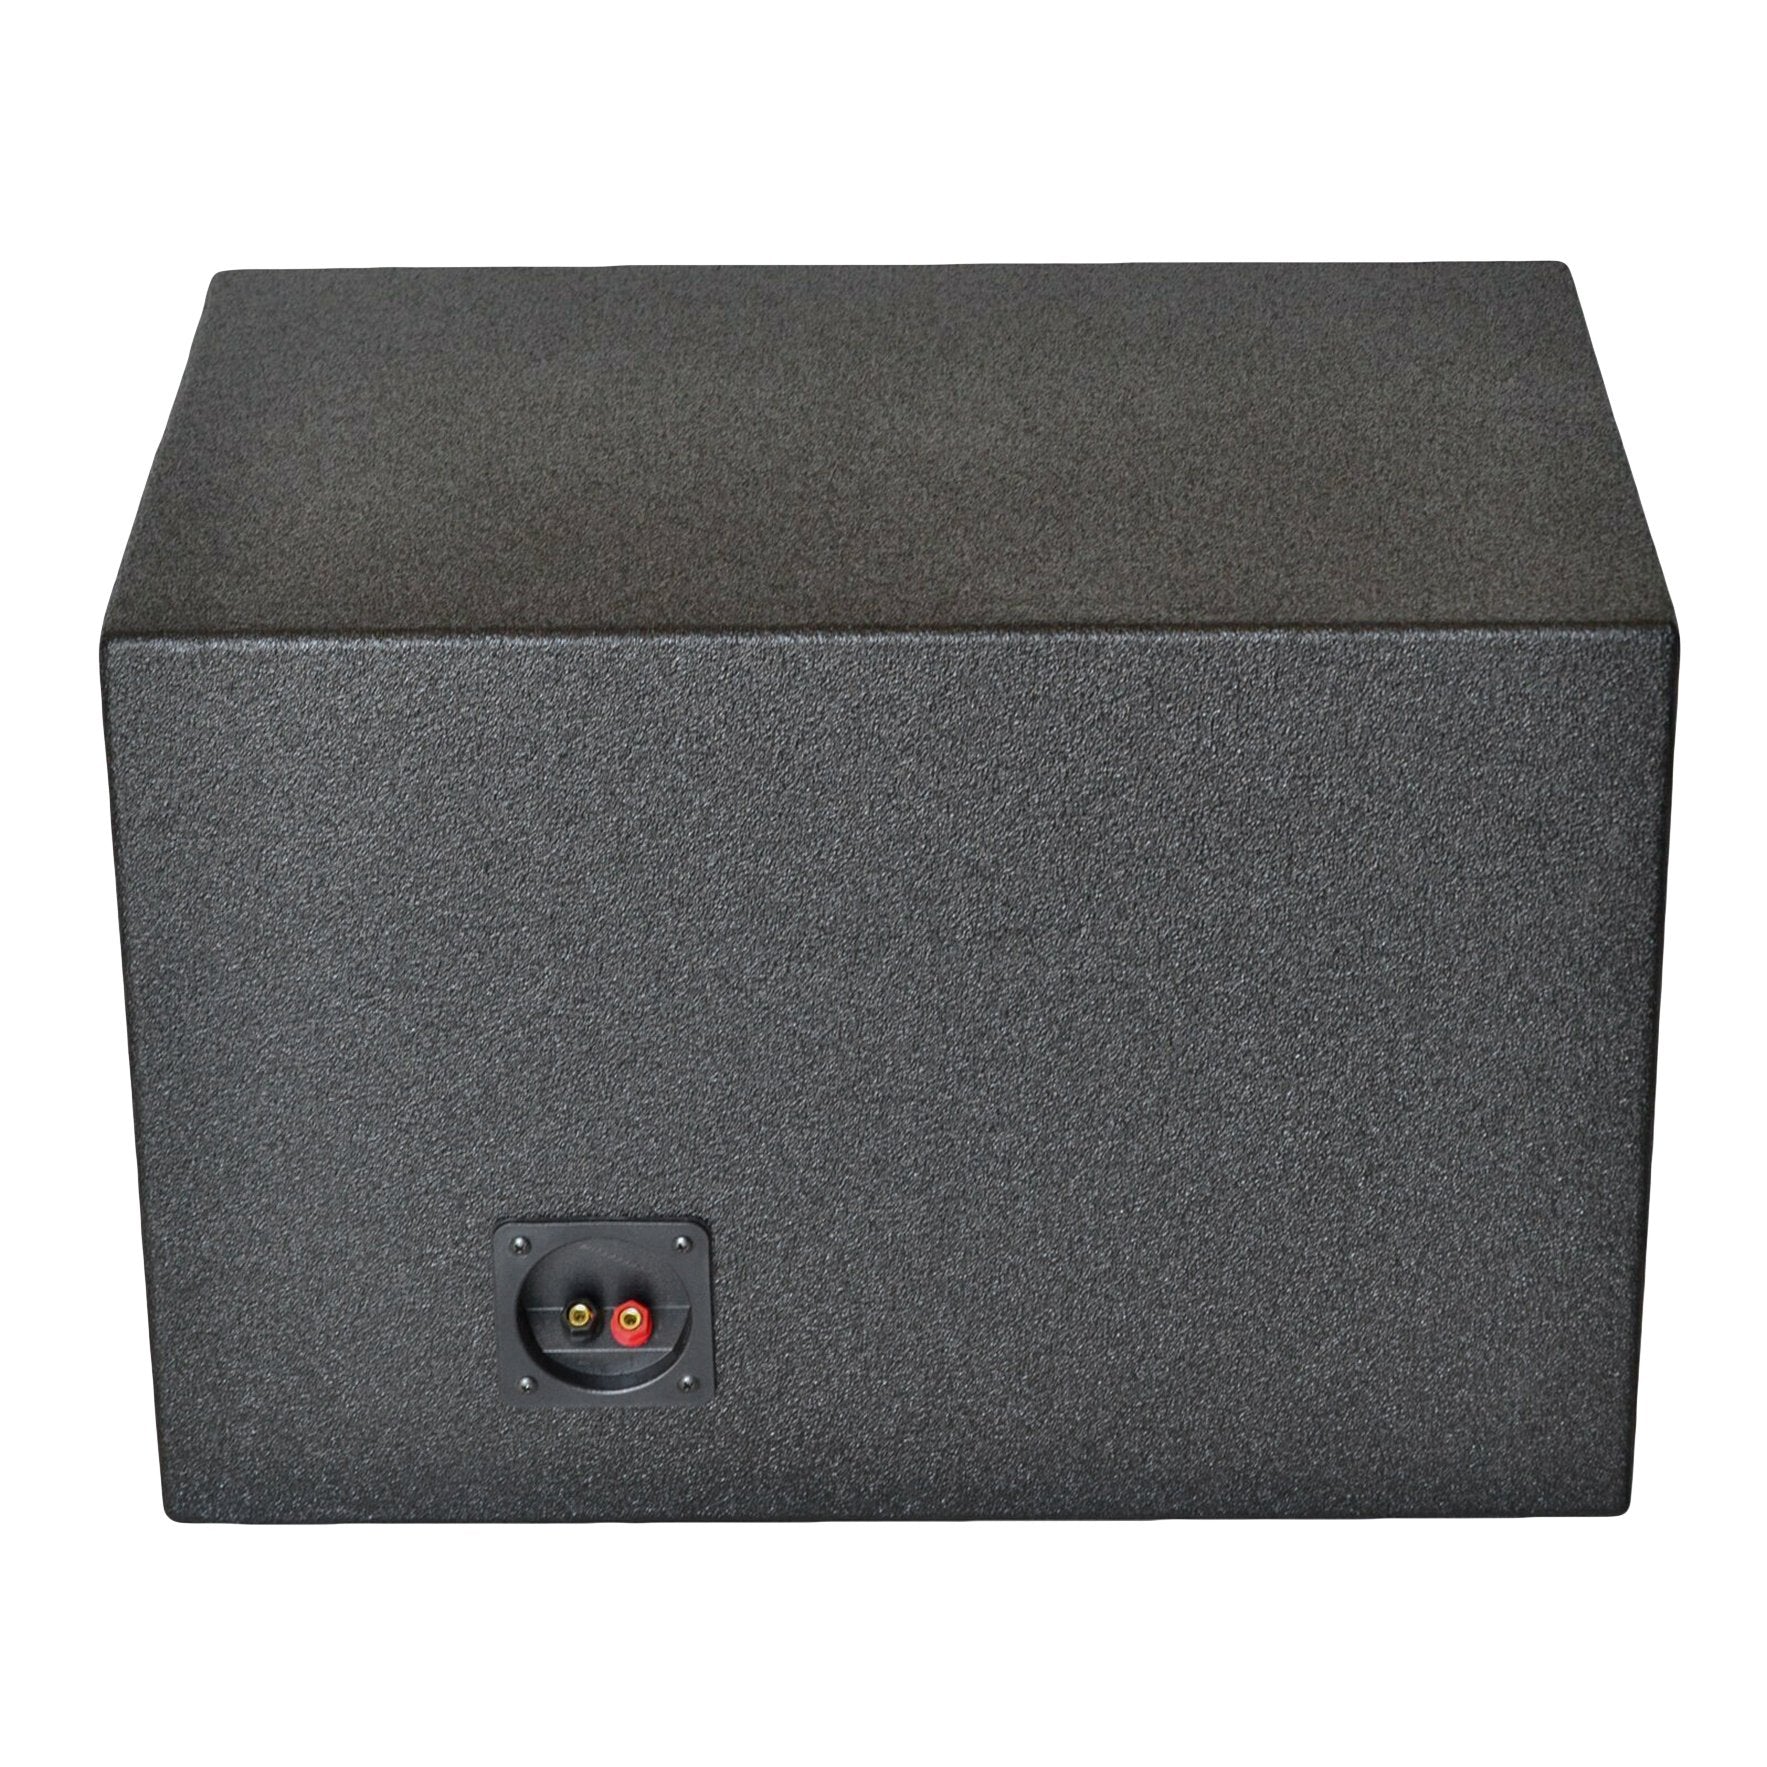 SoundBox SPL Series Single 10" Vented Subwoofer Enclosure, Built to Spec for JL Audio W7 10" - BedLiner